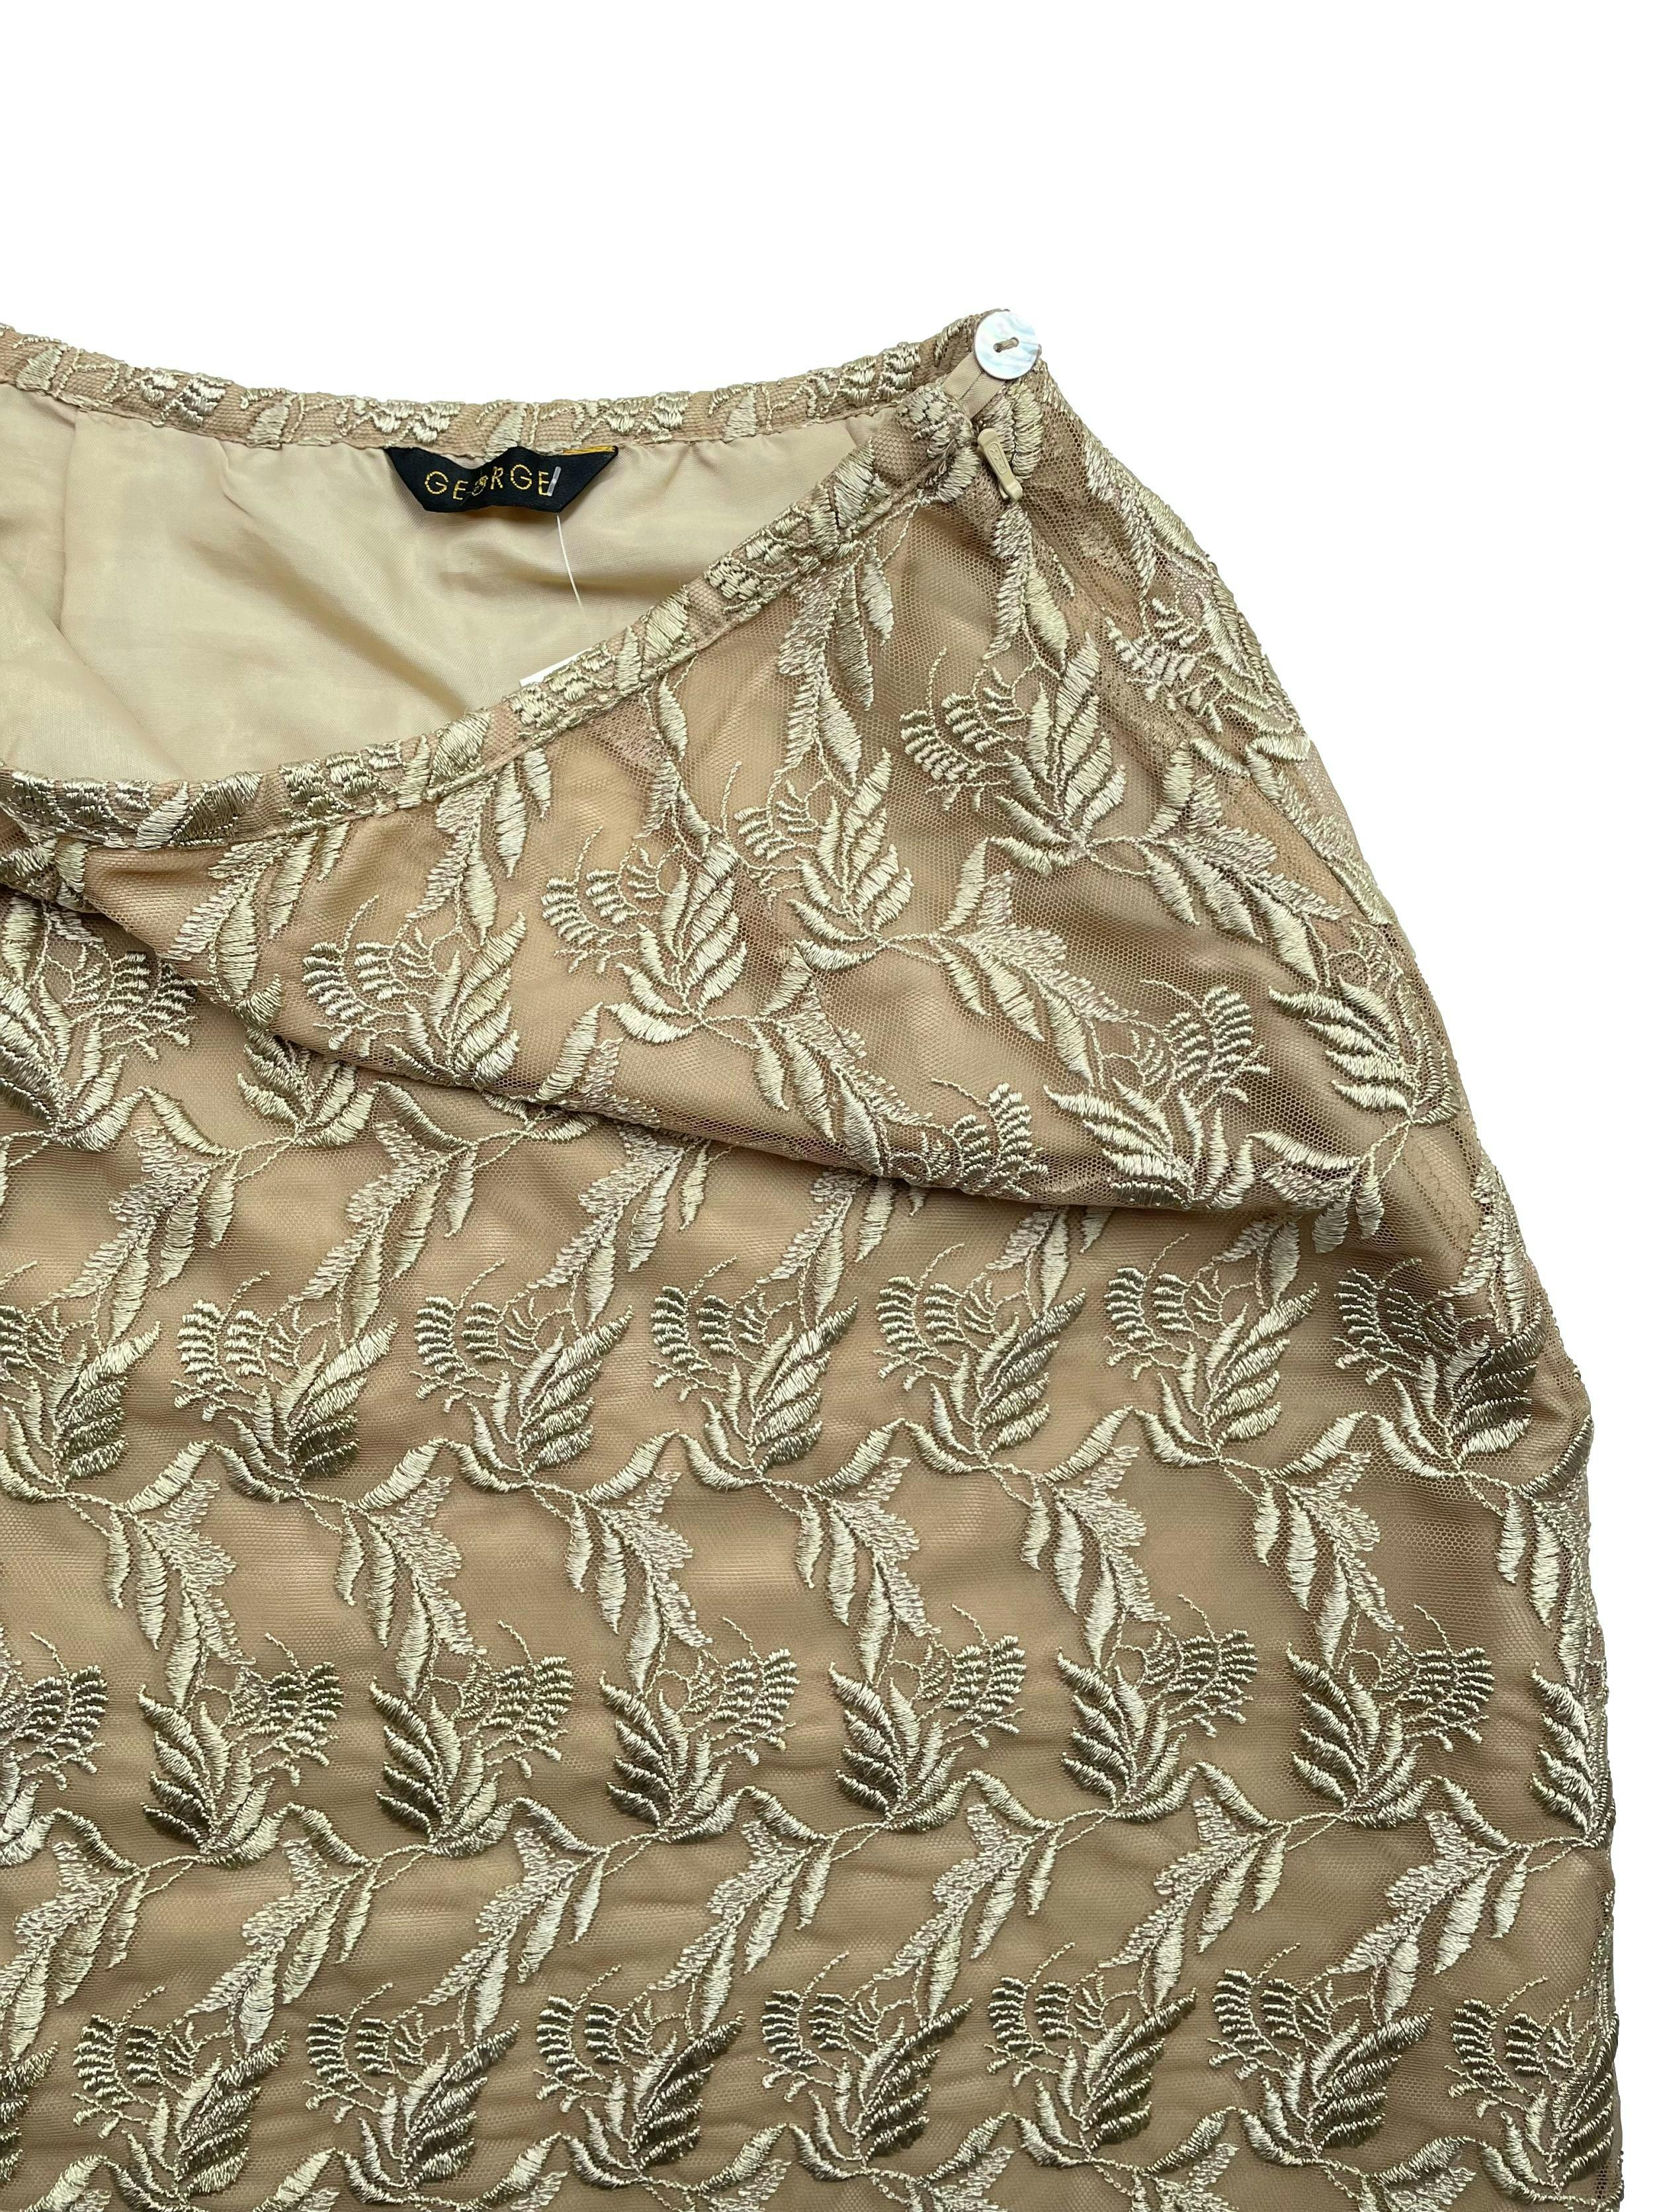 Falda mini George de tul bordado color arena con forro y cierre lateral. Cintura 66cm, Largo 48cm.